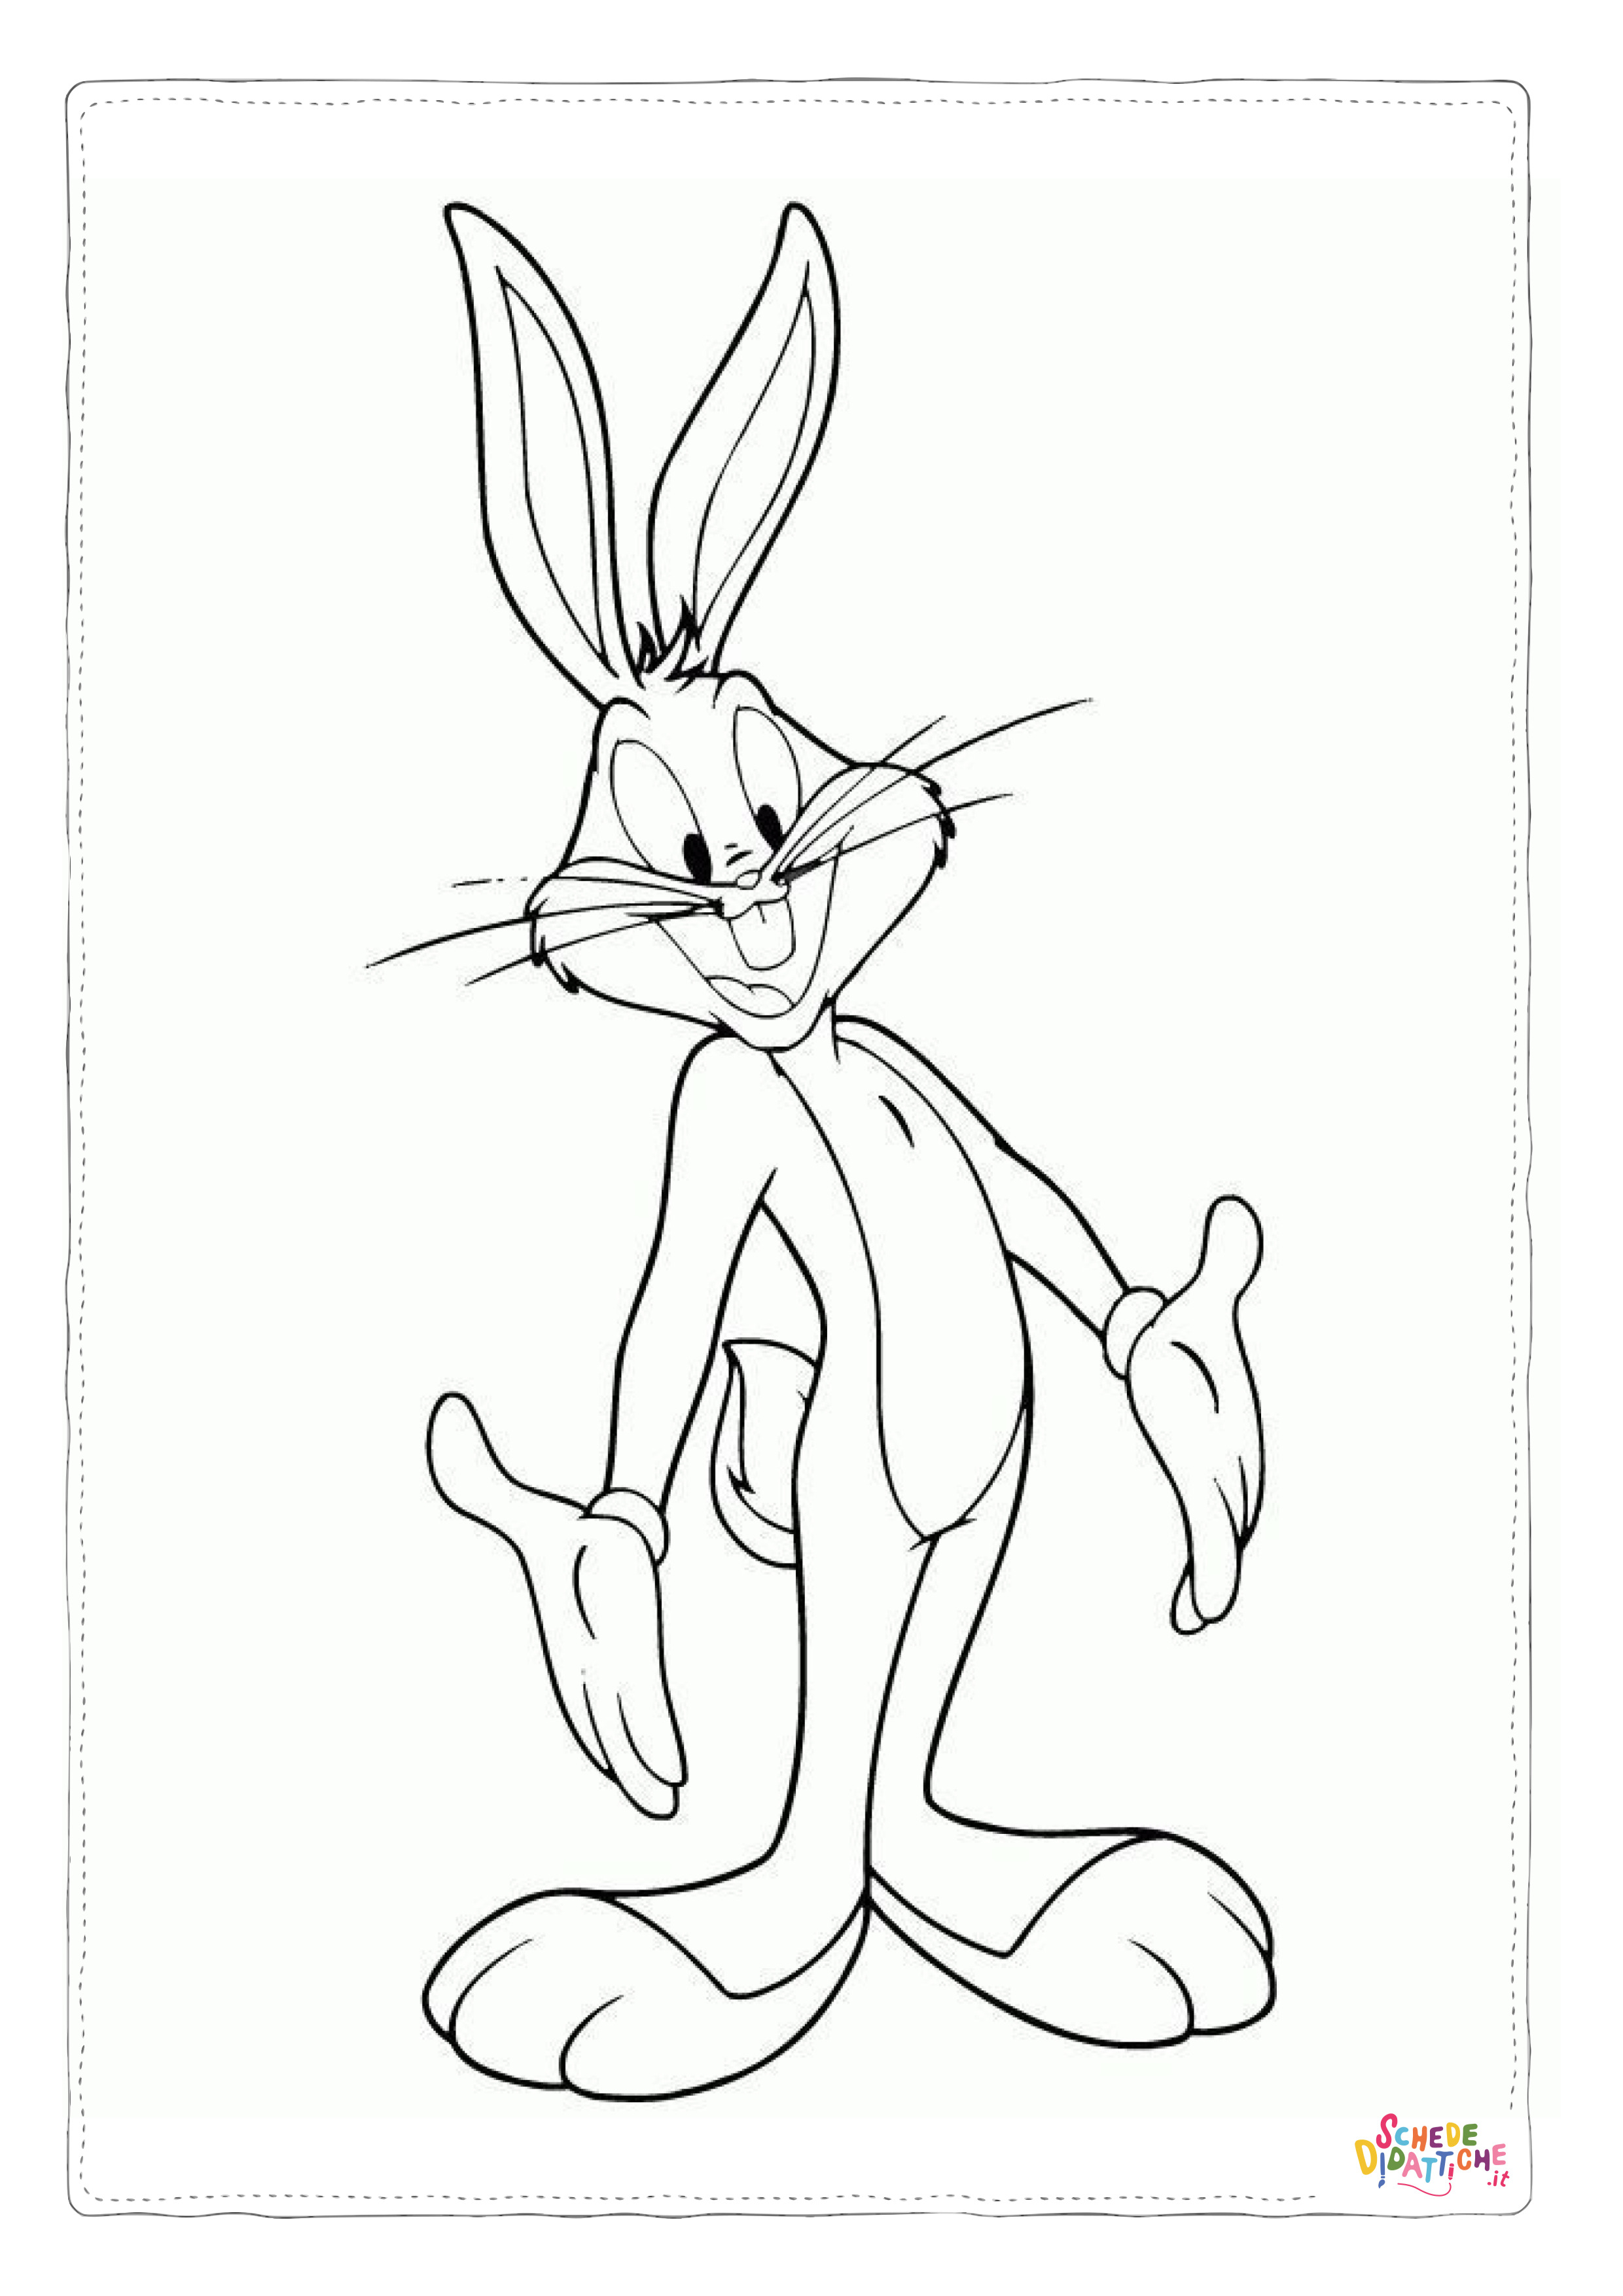 Disegno di Bugs Bunny da stampare e colorare 25